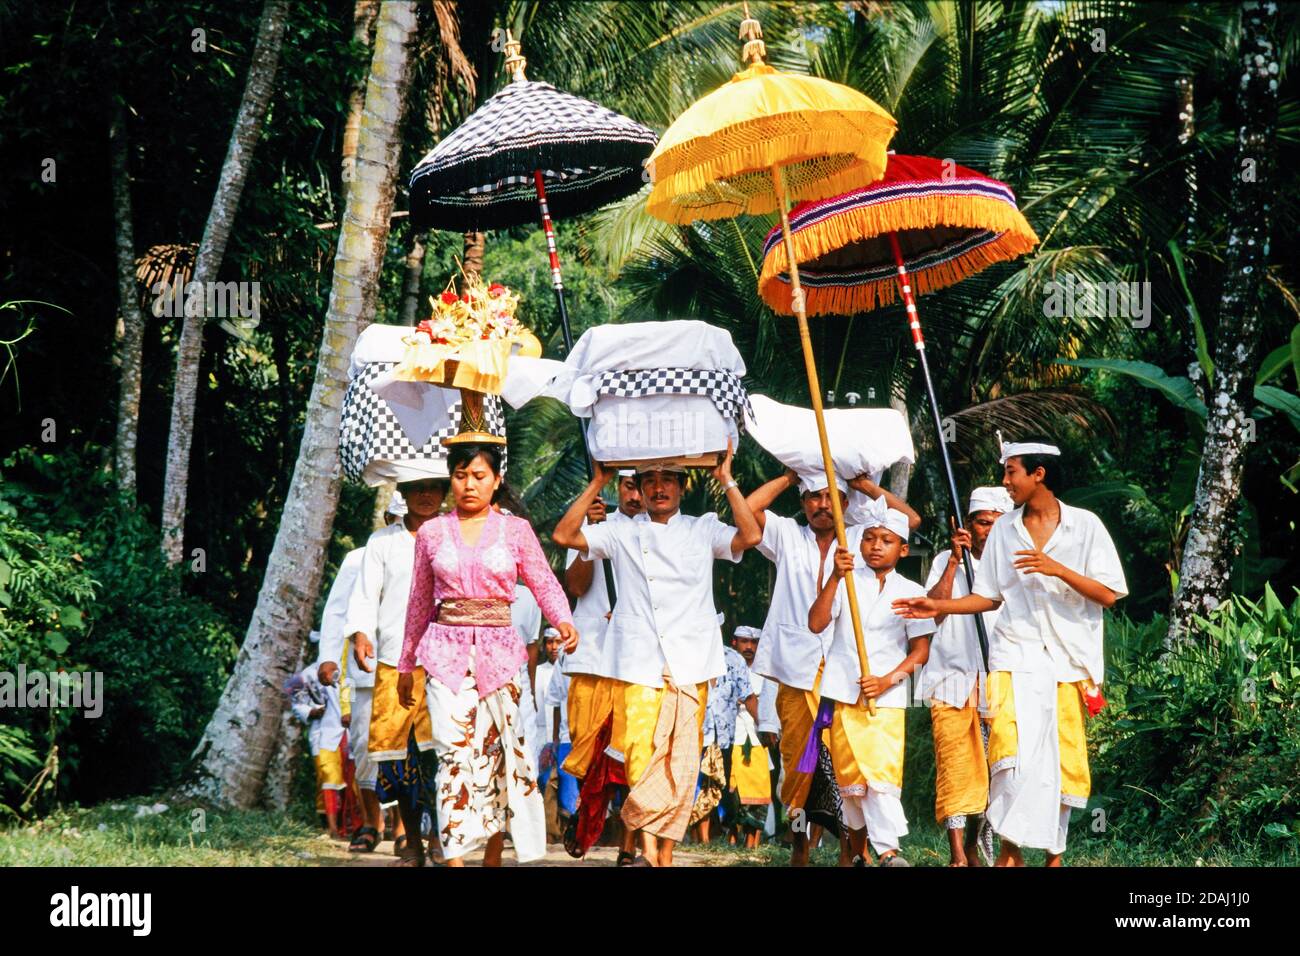 Procesión tradicional balinesa. Las personas vestidas con sarongs llevan ofrendas en la cabeza bajo grandes sombrillas tradicionales durante una celebración en Ubud, Indonesia Foto de stock